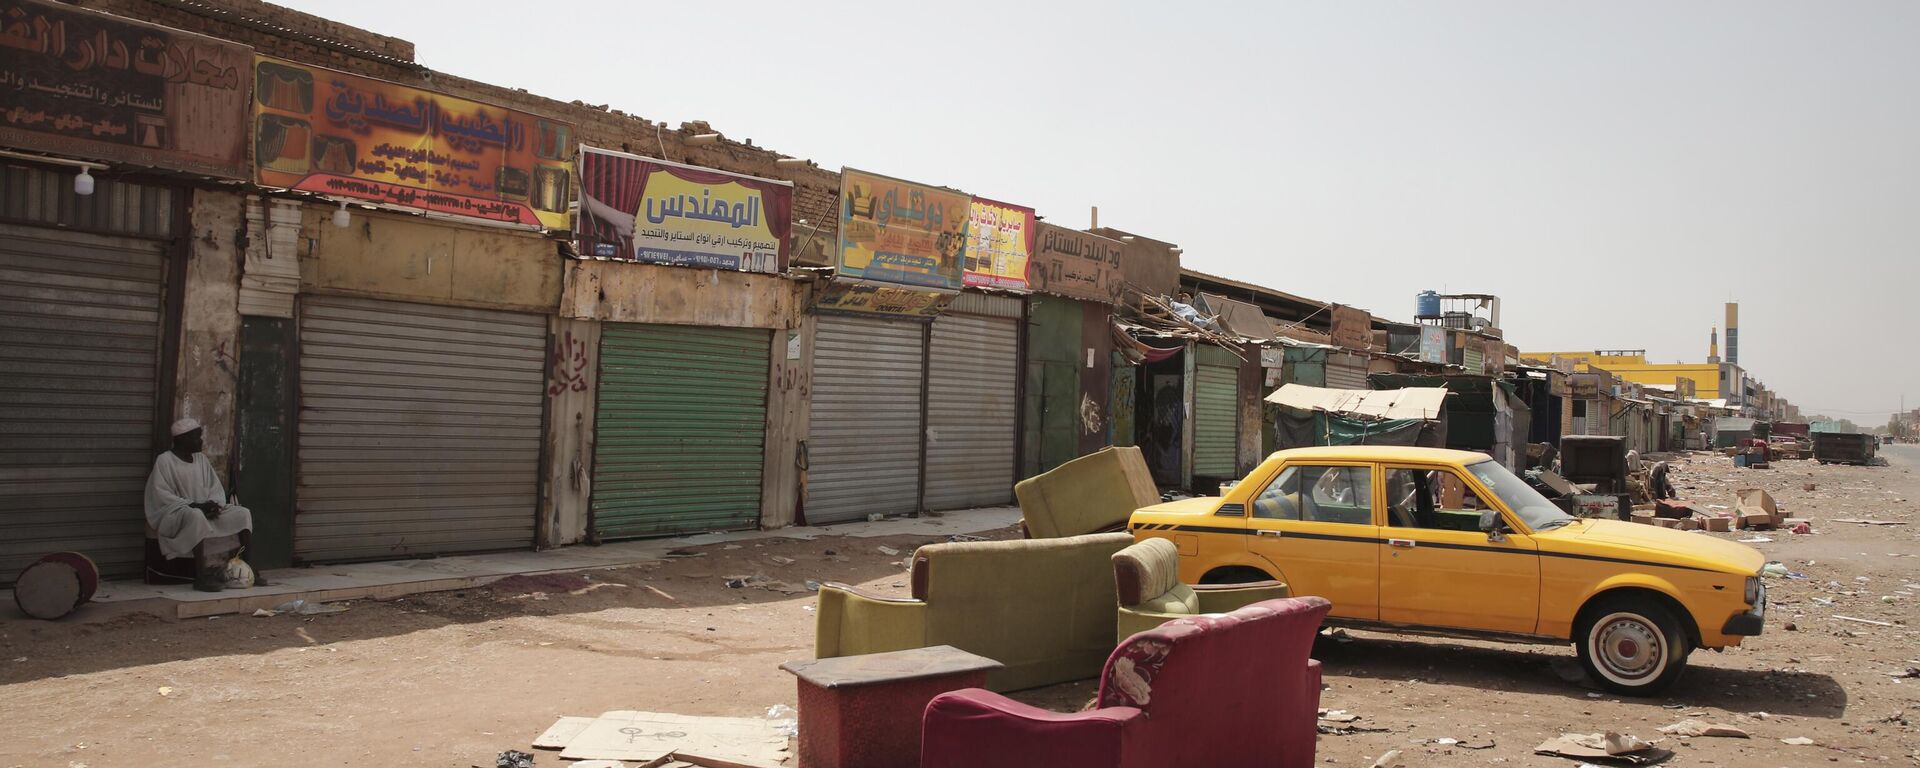 Un hombre sentado junto a unas tiendas cerradas en Jartum, Sudán, el lunes 17 de abril de 2023 - Sputnik Mundo, 1920, 17.04.2023